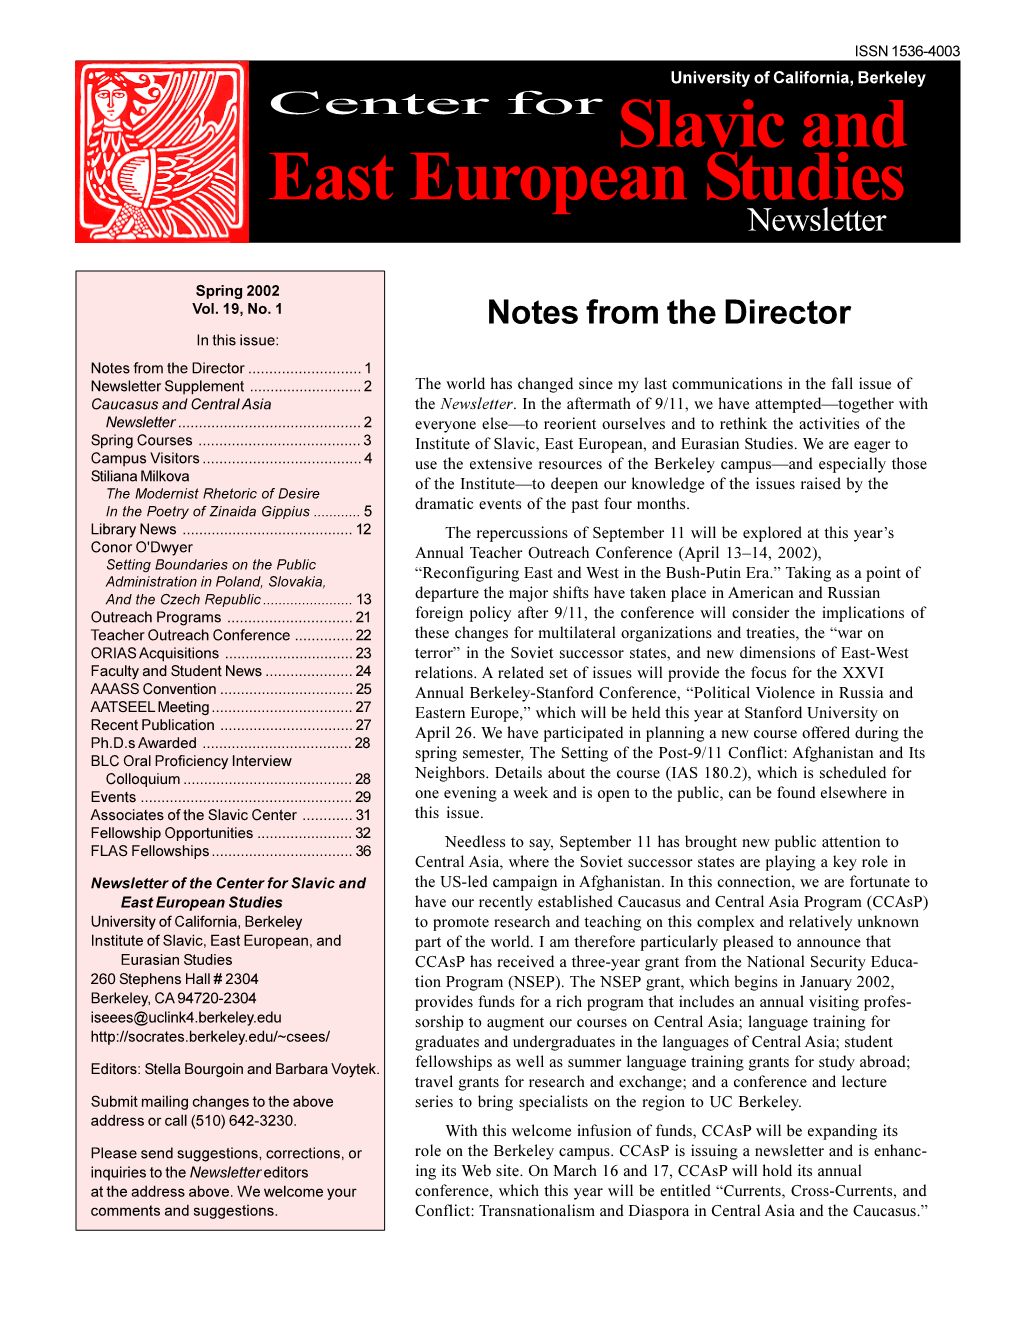 Newsletter of the Center for Slavic and East European Studies